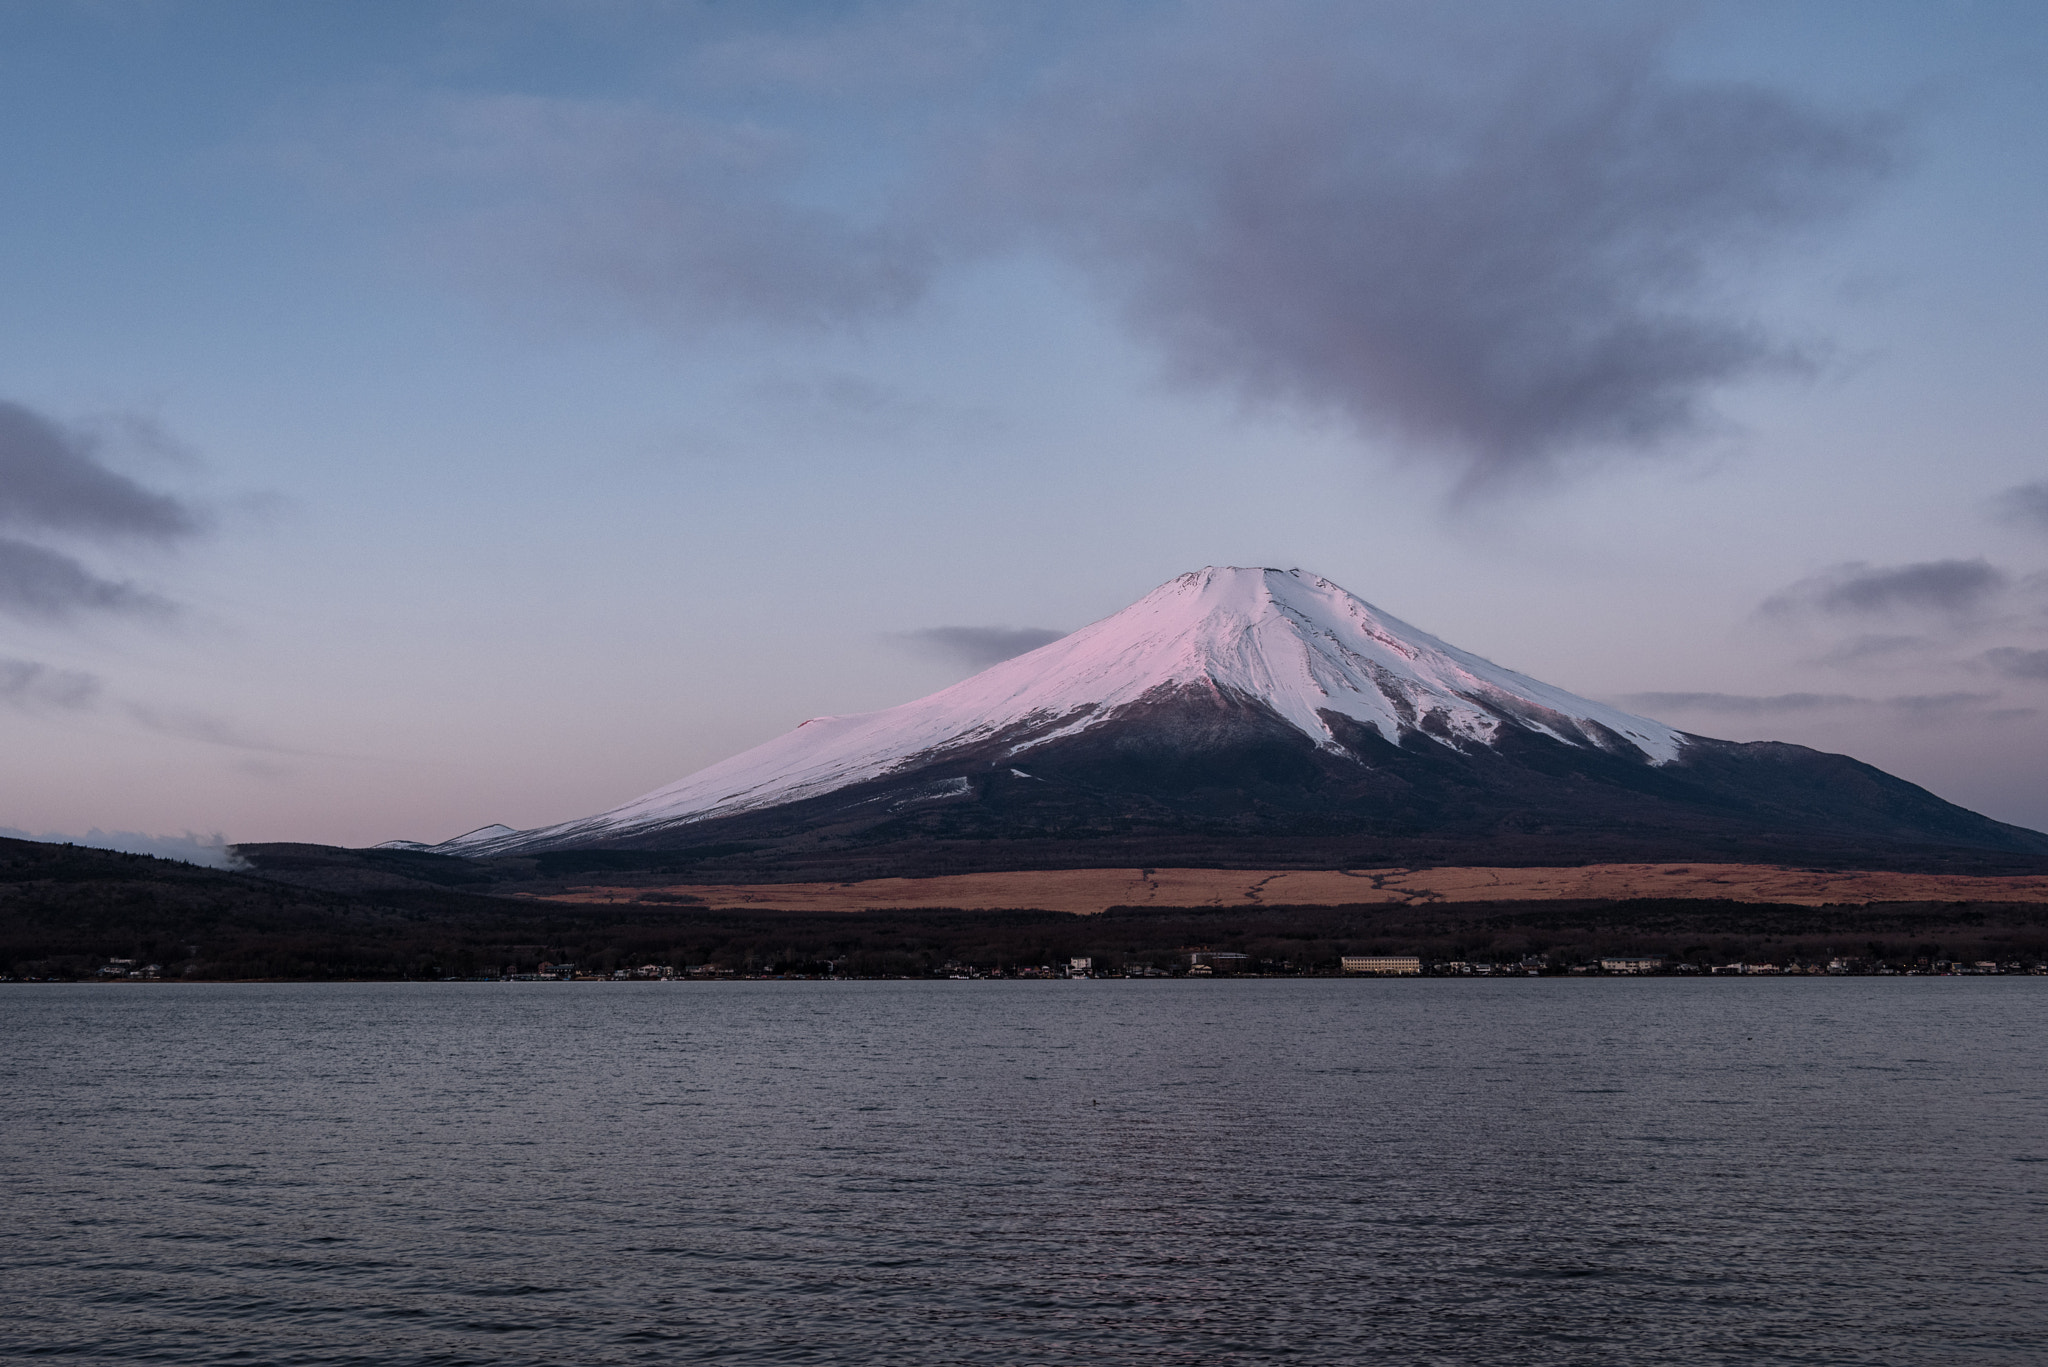 Nikon D810A sample photo. Mt. fuji at dawn photography